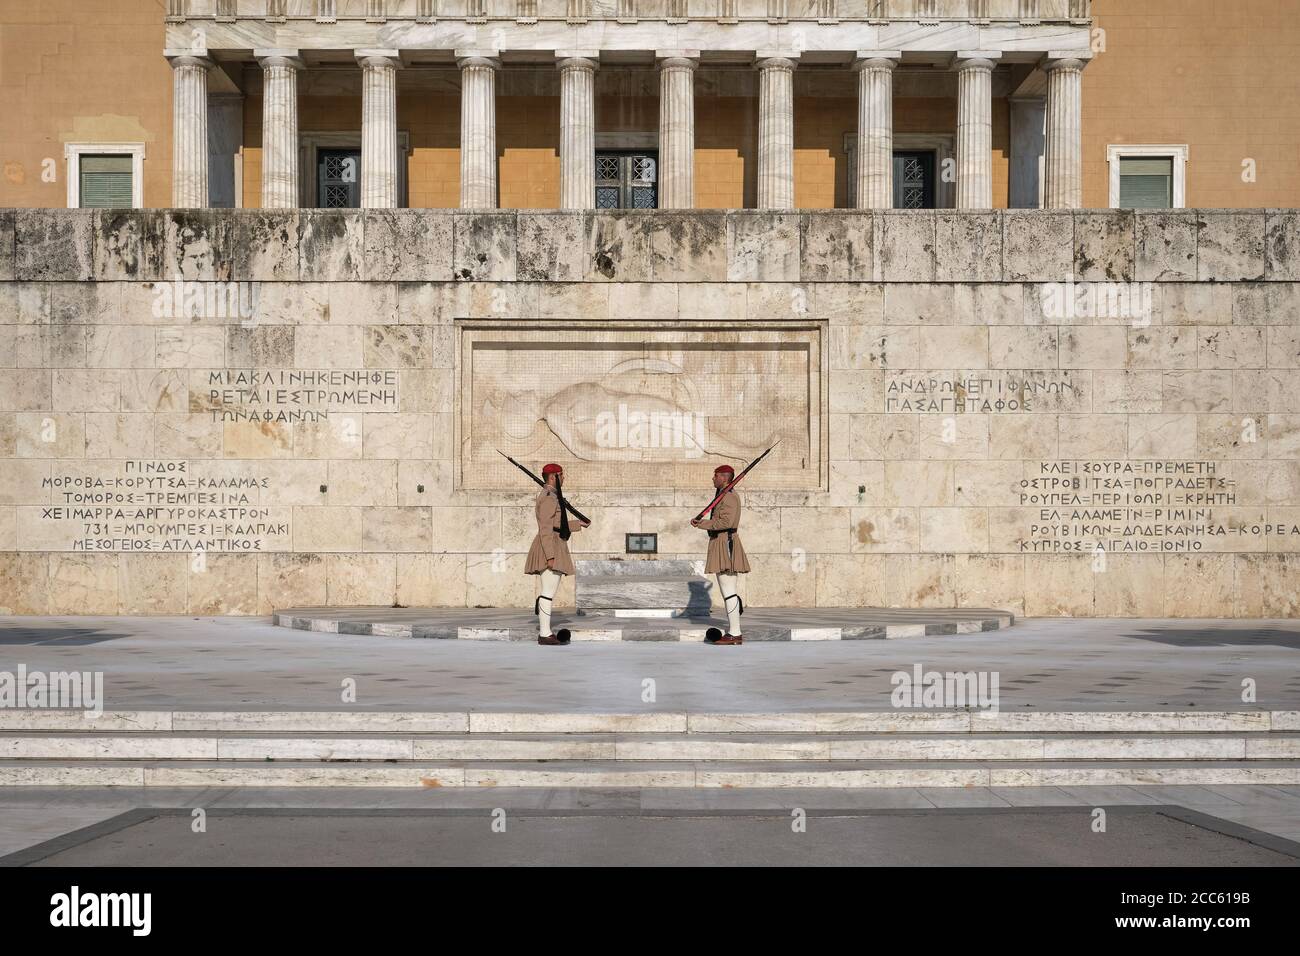 Athen, Griechenland - 14. Mai 2019: Wechsel der Präsidentengarde Evzones durch das griechische Grab des unbekannten Soldaten. Berühmte tägliche Zeremonie, patriotisch, stolz. Stockfoto